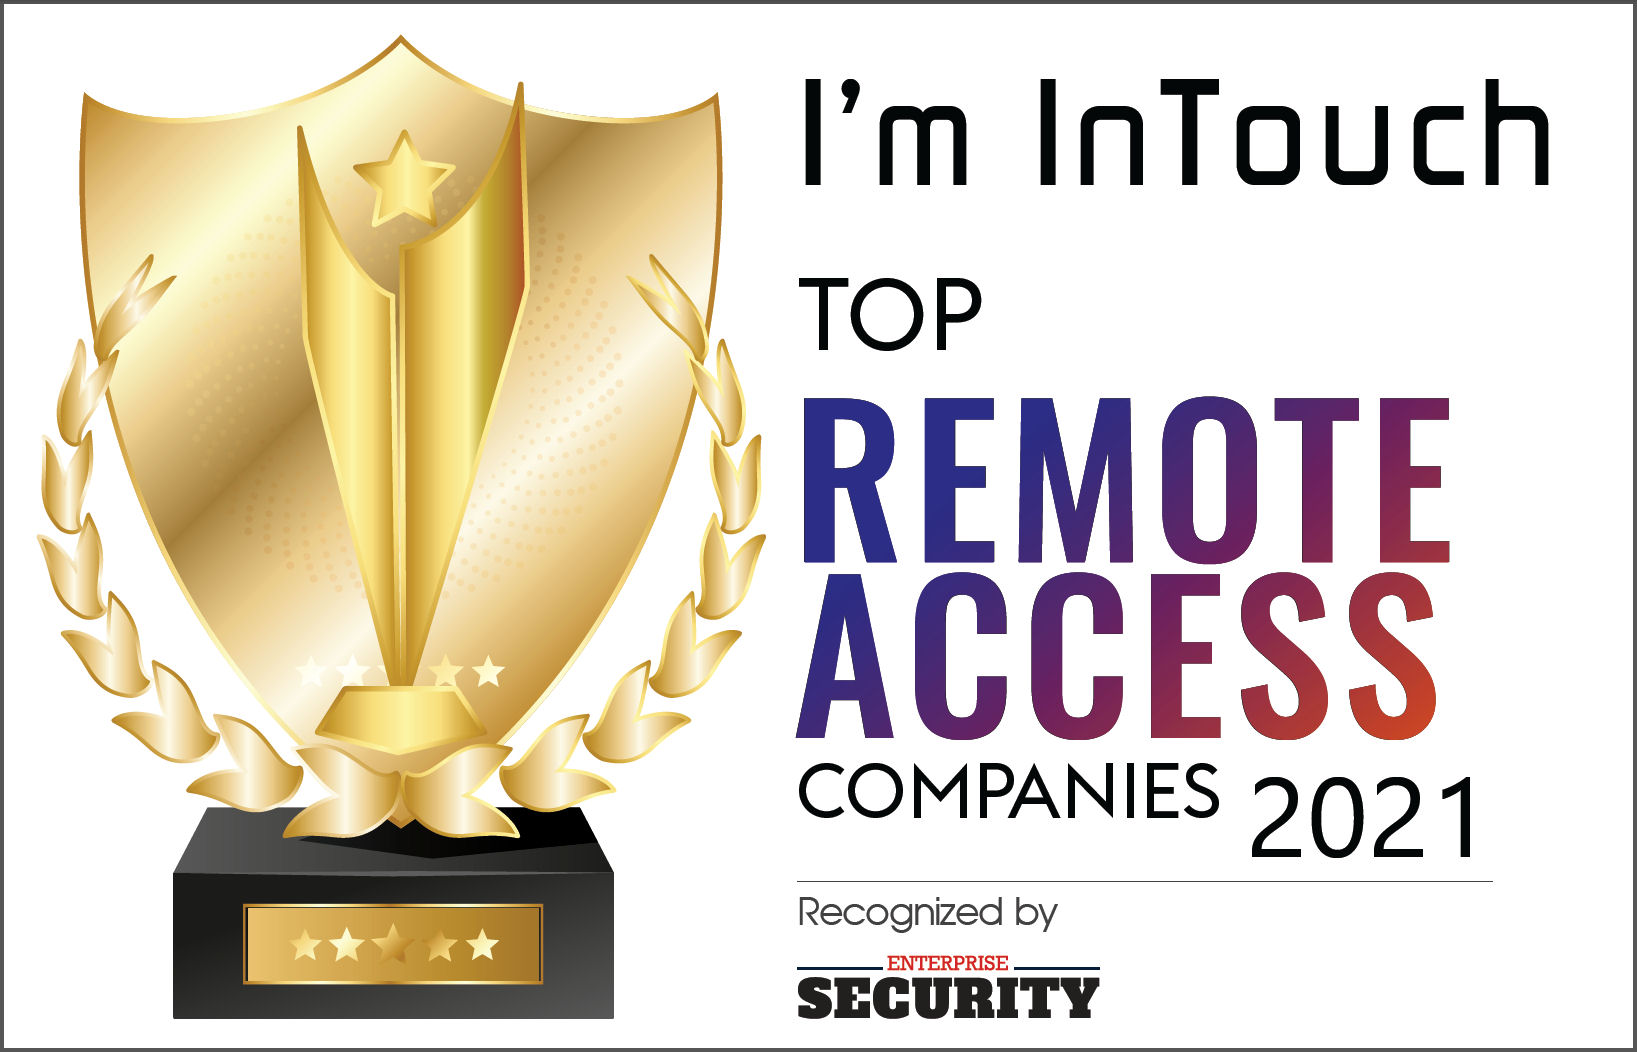 Enterprise Security Editor's Choice Award